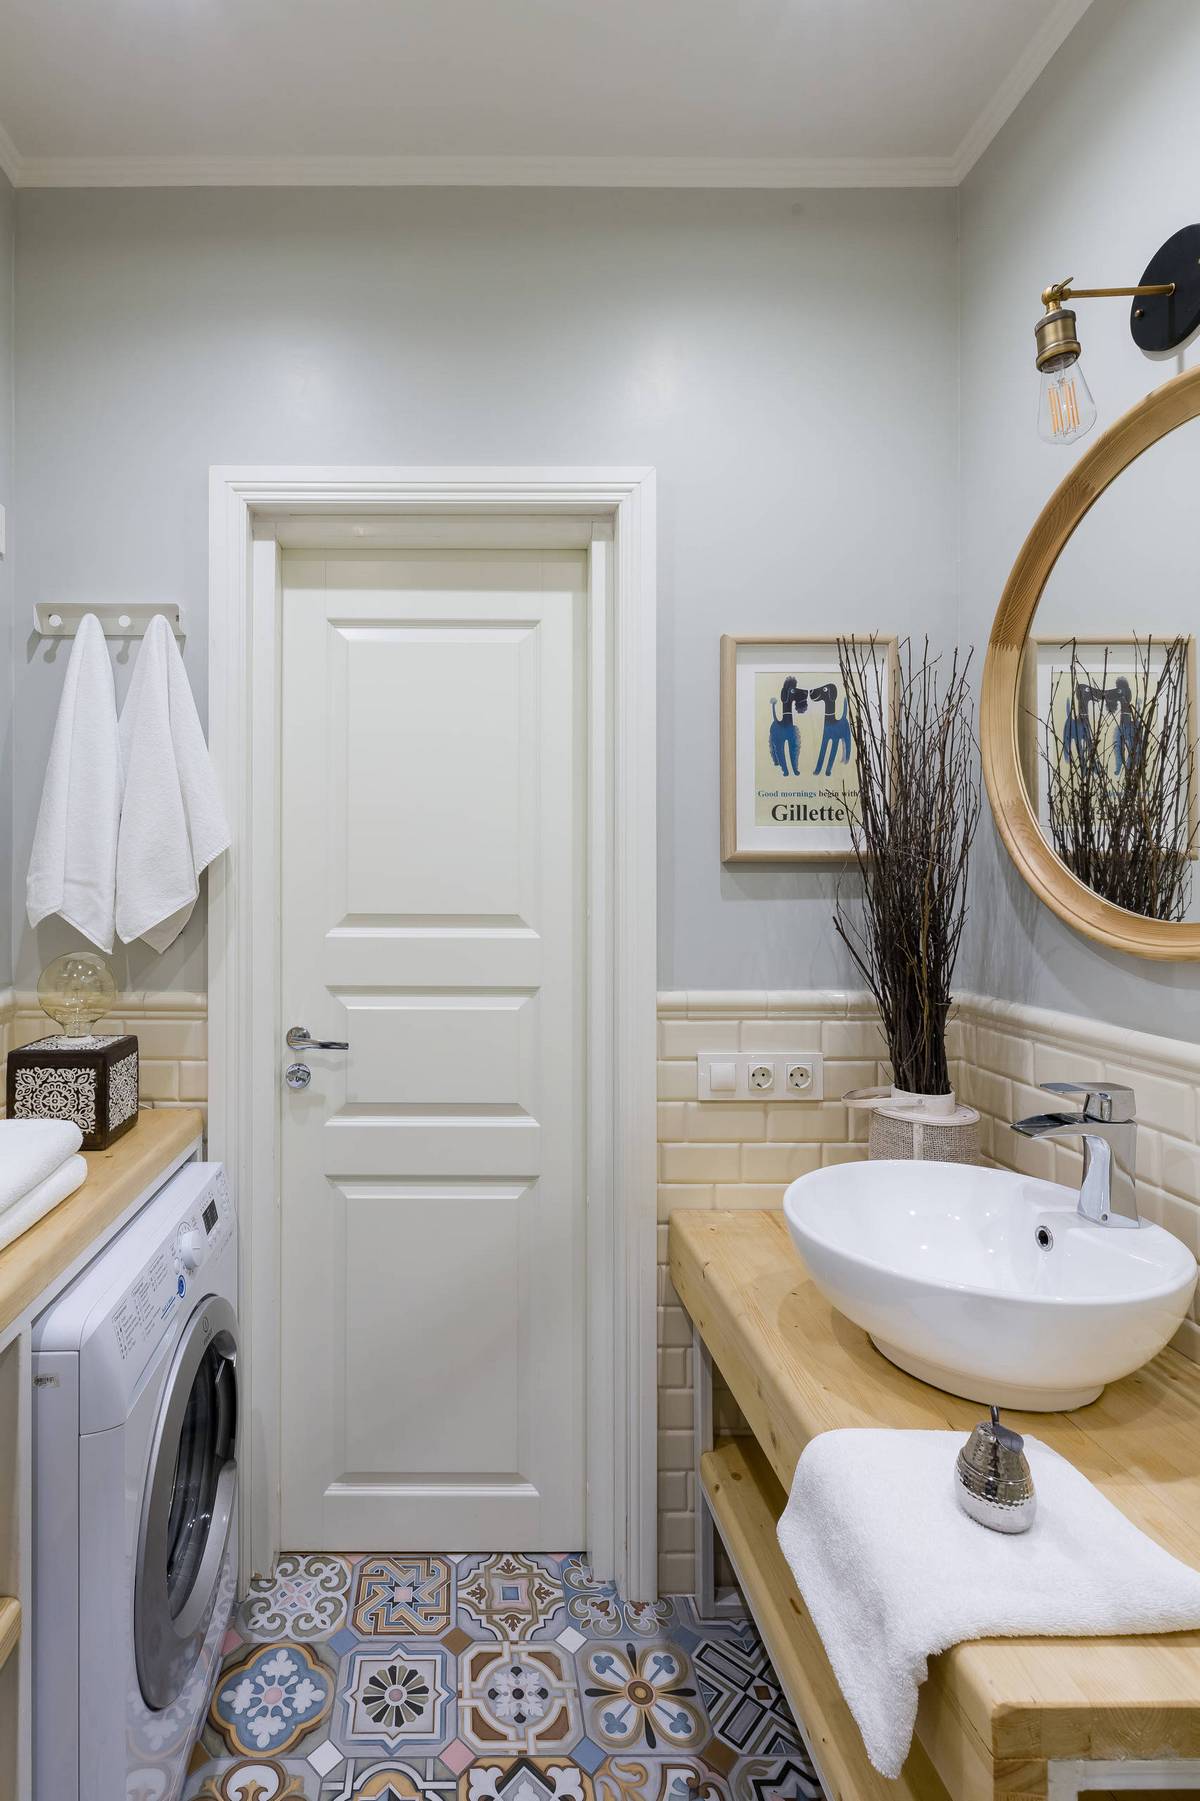 Phòng tắm sử dụng gam màu xám - trắng chủ đạo cùng nội thất gỗ. Sàn nhà lát gạch bông cổ điển tạo sự liên tưởng đến backsplash ở phòng bếp. Chiếc máy giặt được bố trí đối diện bồn rửa một cách gọn gàng.